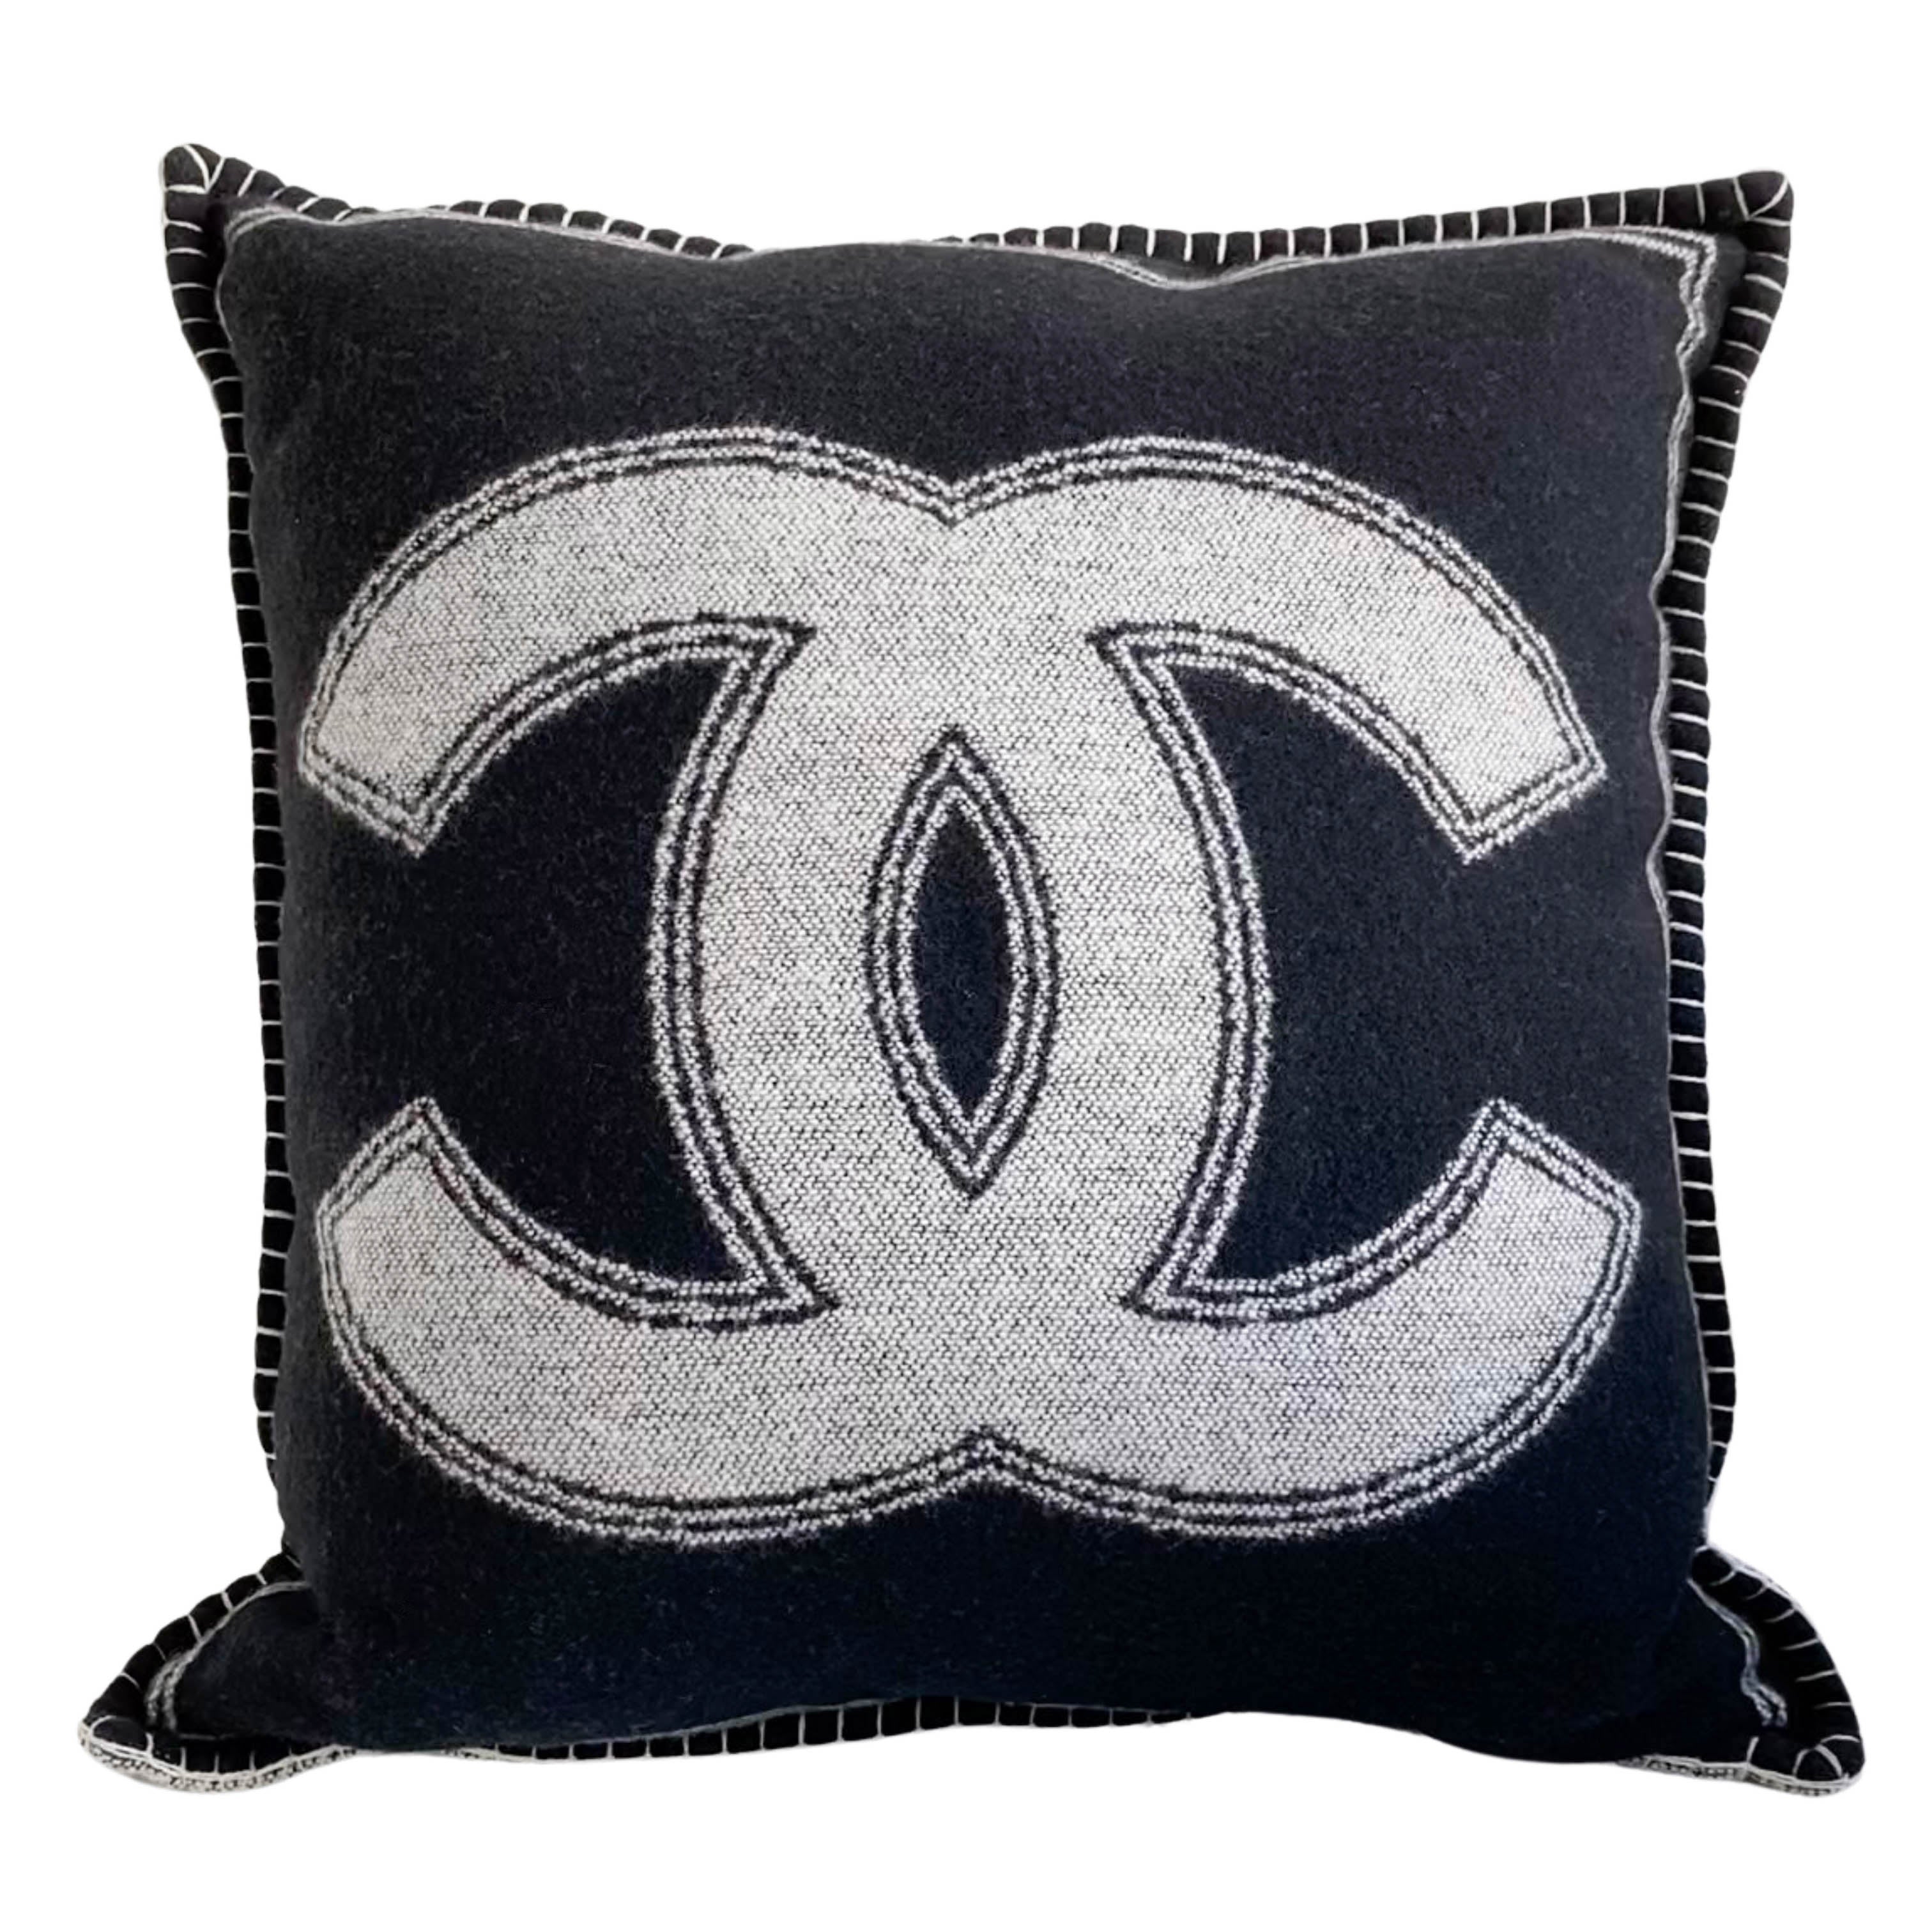 Chanel pillow case  Glam decor diy, Chanel decor, Diy home decor easy